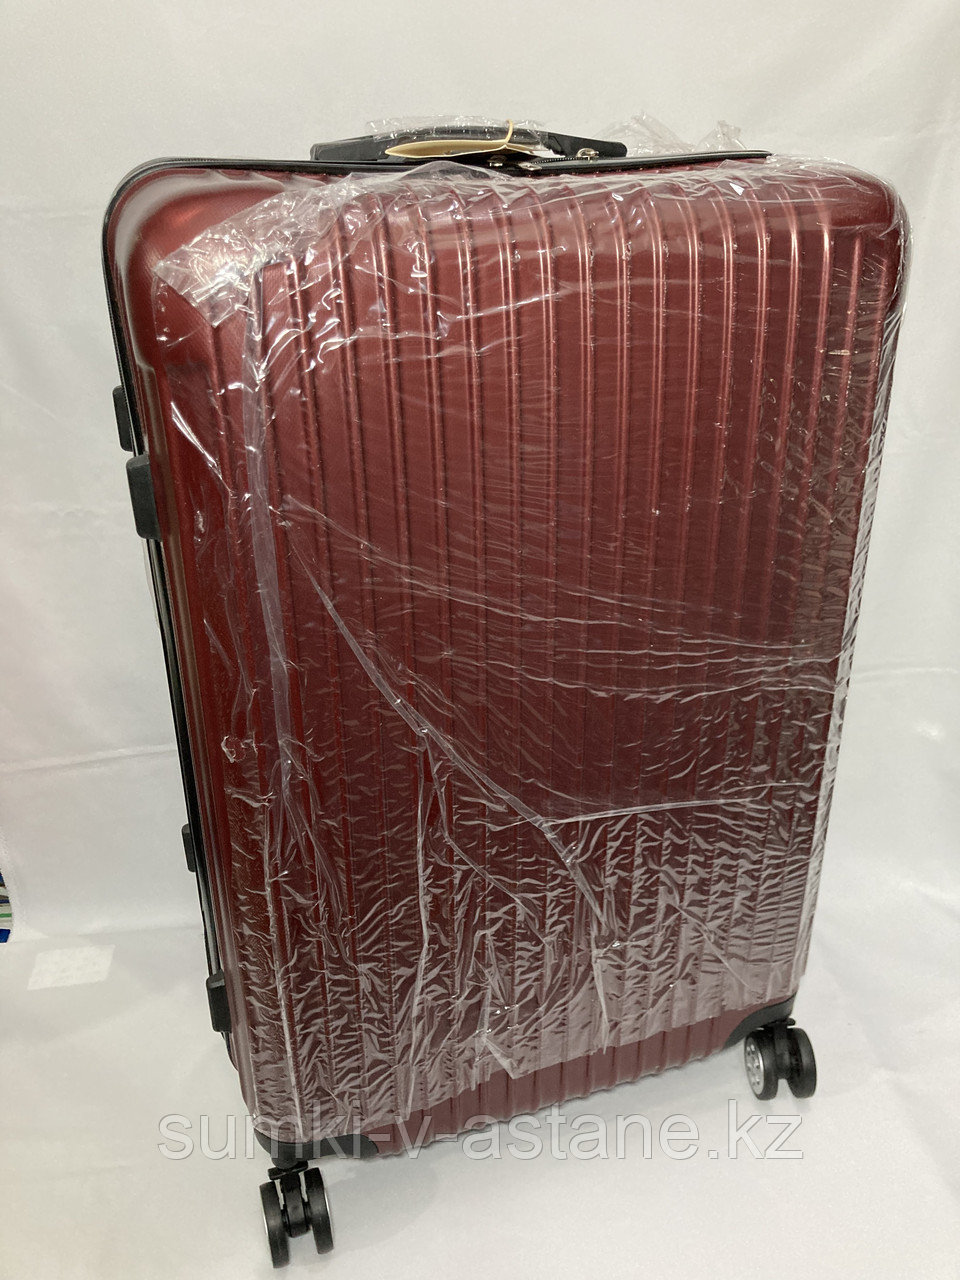 Большой пластиковый дорожный чемодан на 4-х колёсах "Longstar". Высота 74 см, ширина 47 см, глубина 29 см.